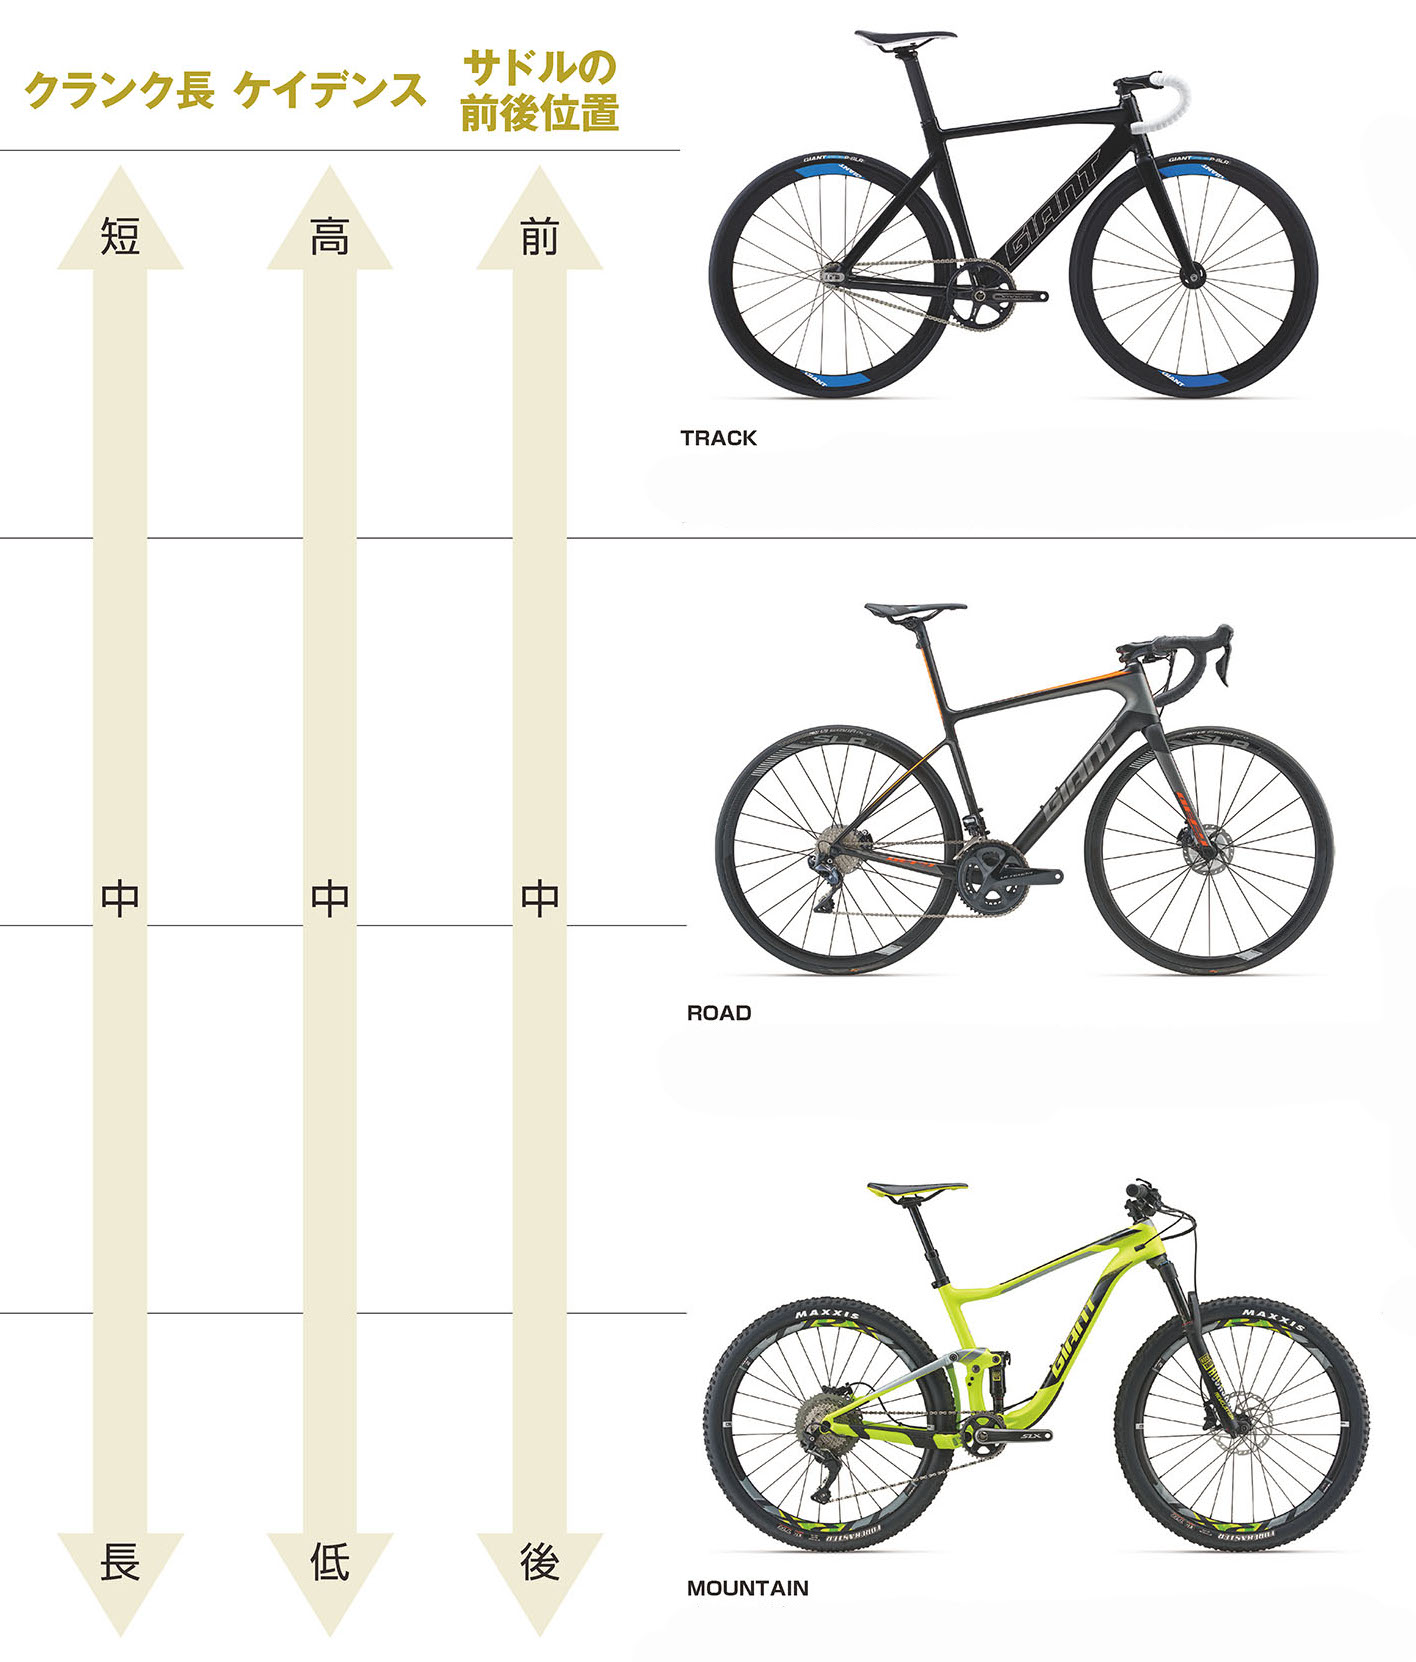 目的別自転車のクランク長比較をご紹介します。